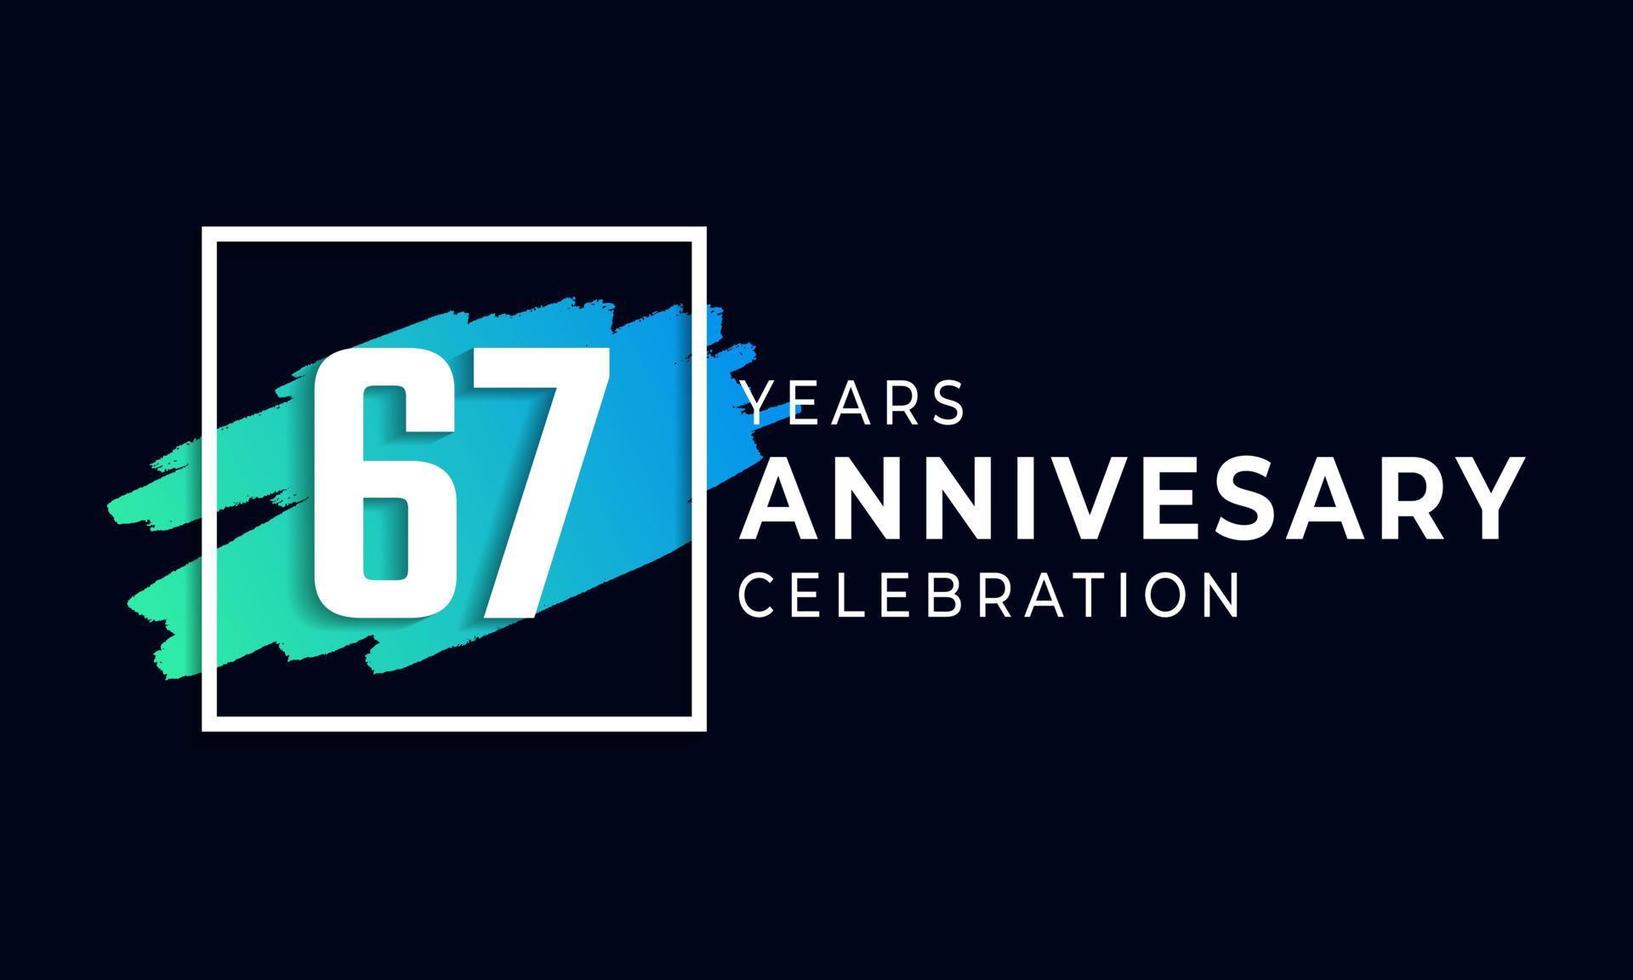 Célébration du 67e anniversaire avec une brosse bleue et un symbole carré. joyeux anniversaire salutation célèbre l'événement isolé sur fond noir vecteur